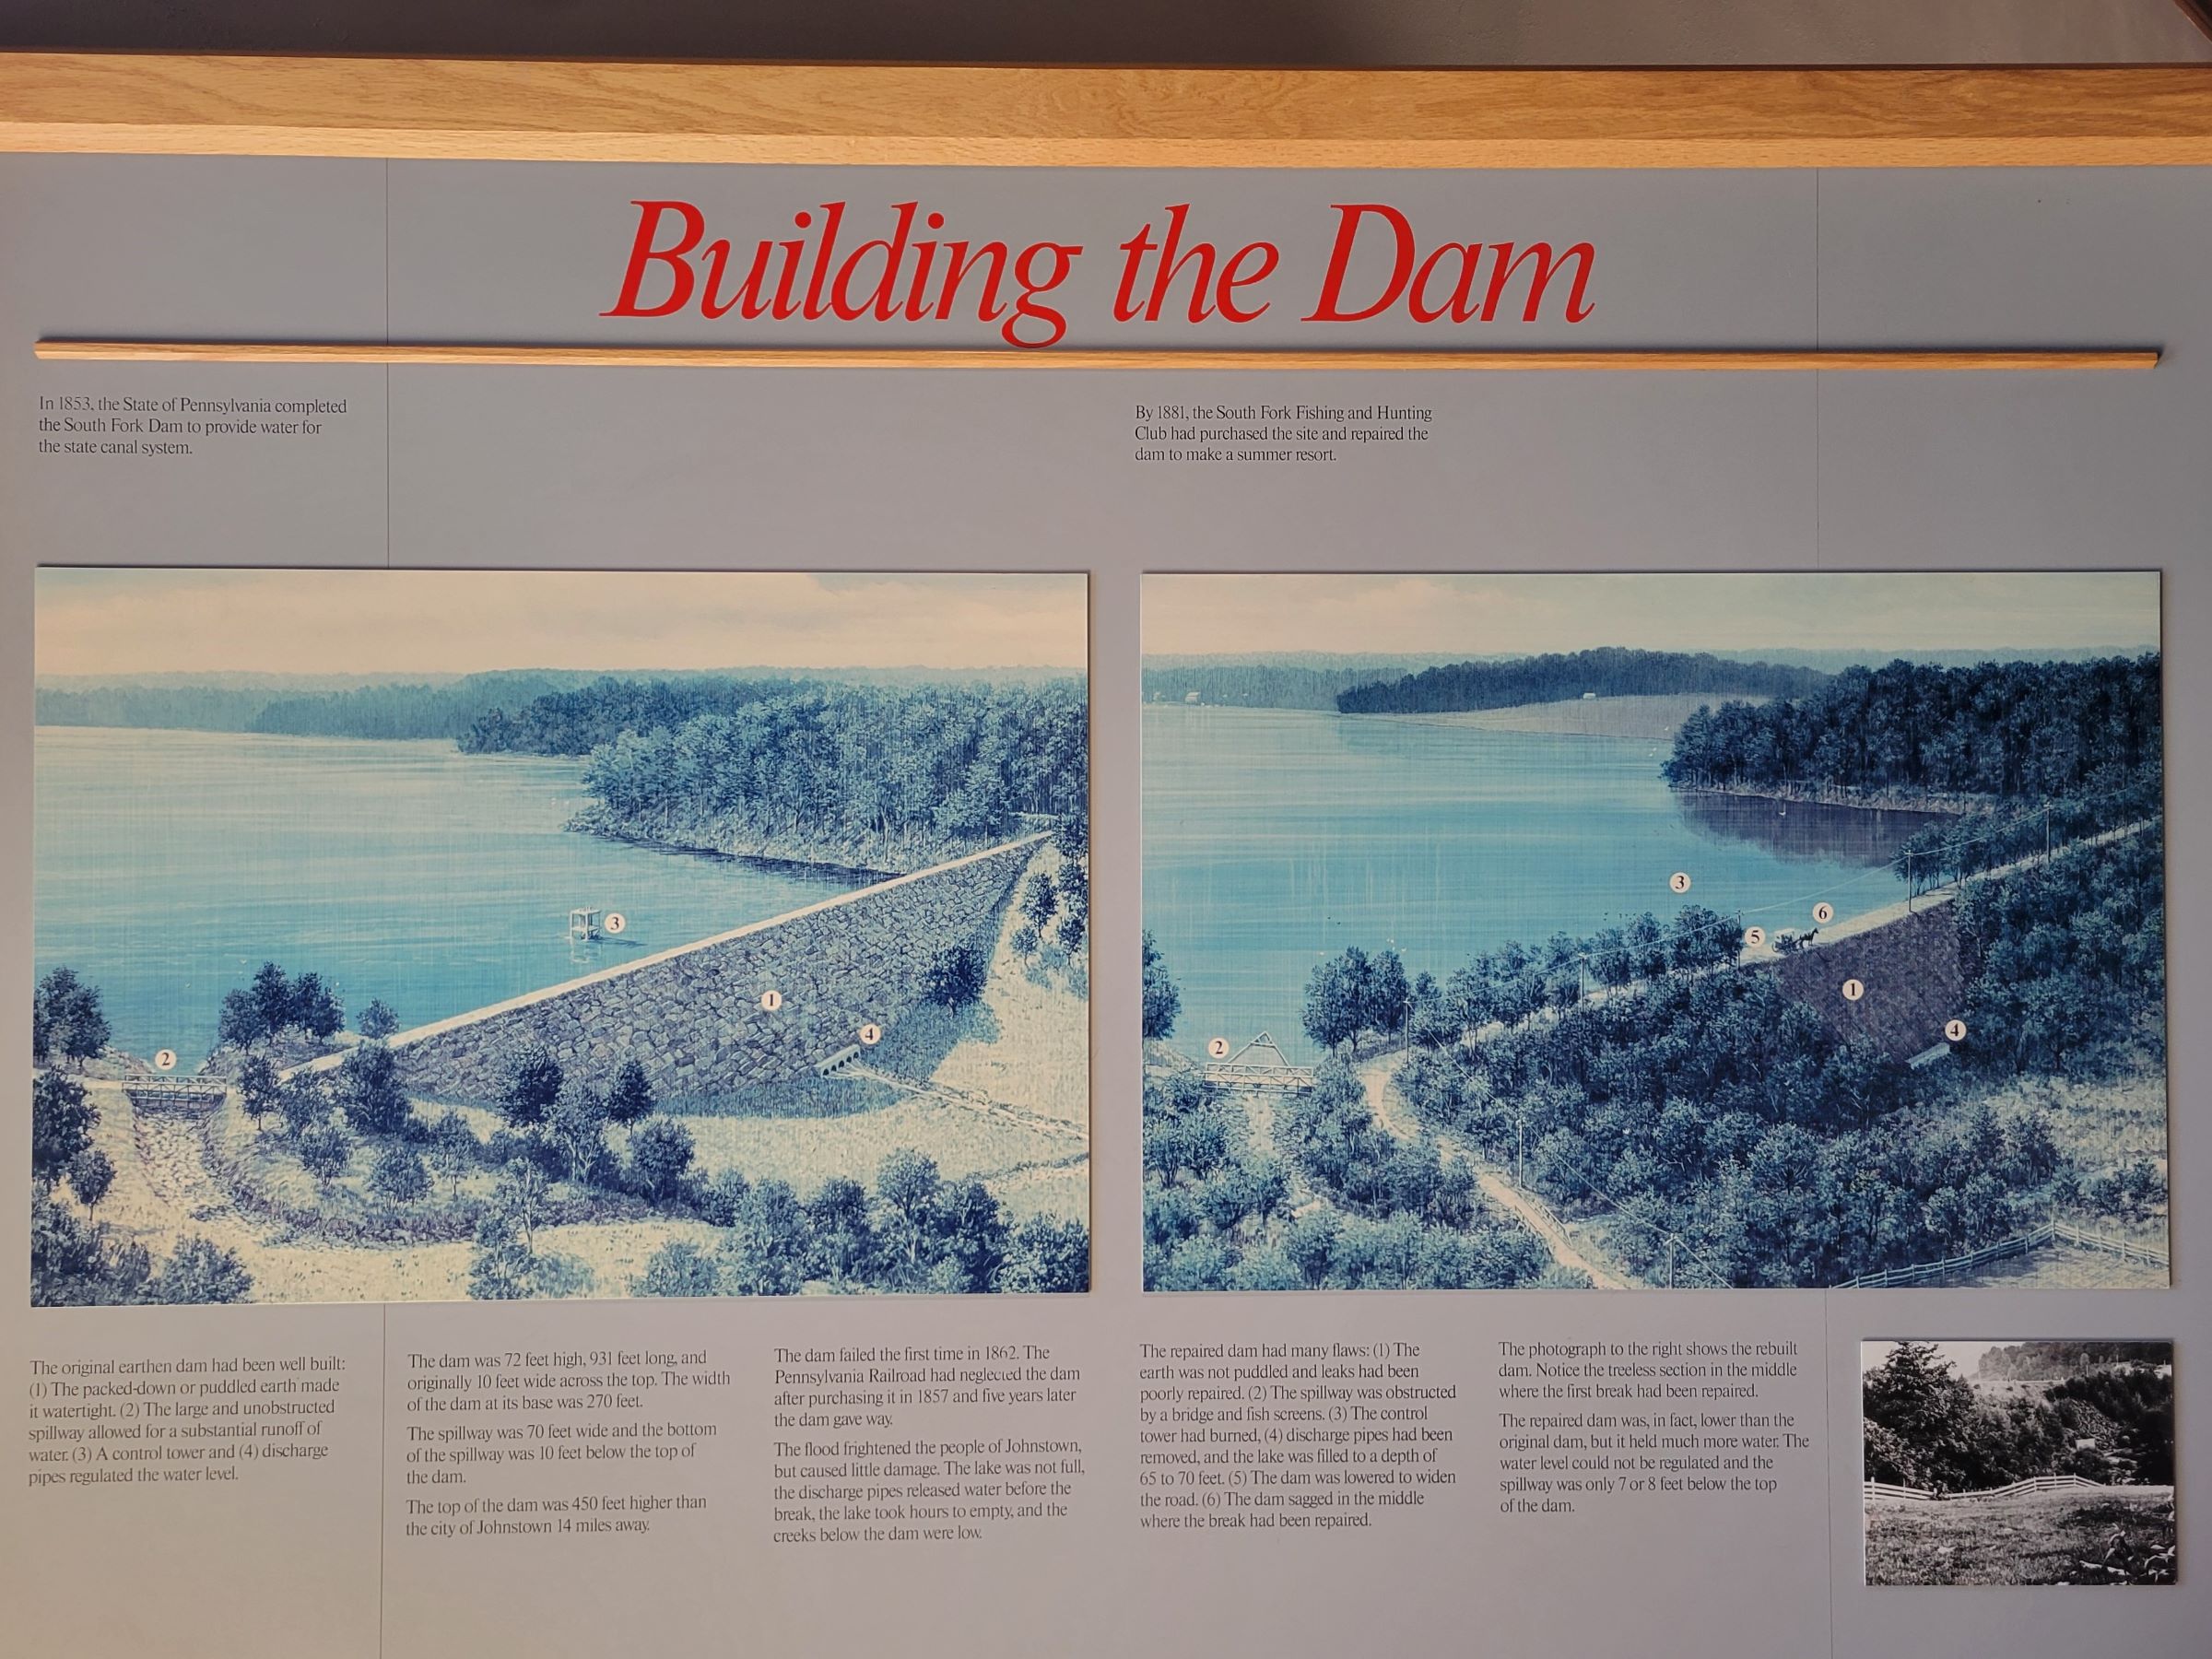 미국 최악의 댐 붕괴 사고를 기억하는 존스타운 홍수 국립기념지(Johnstown Flood National Memorial)